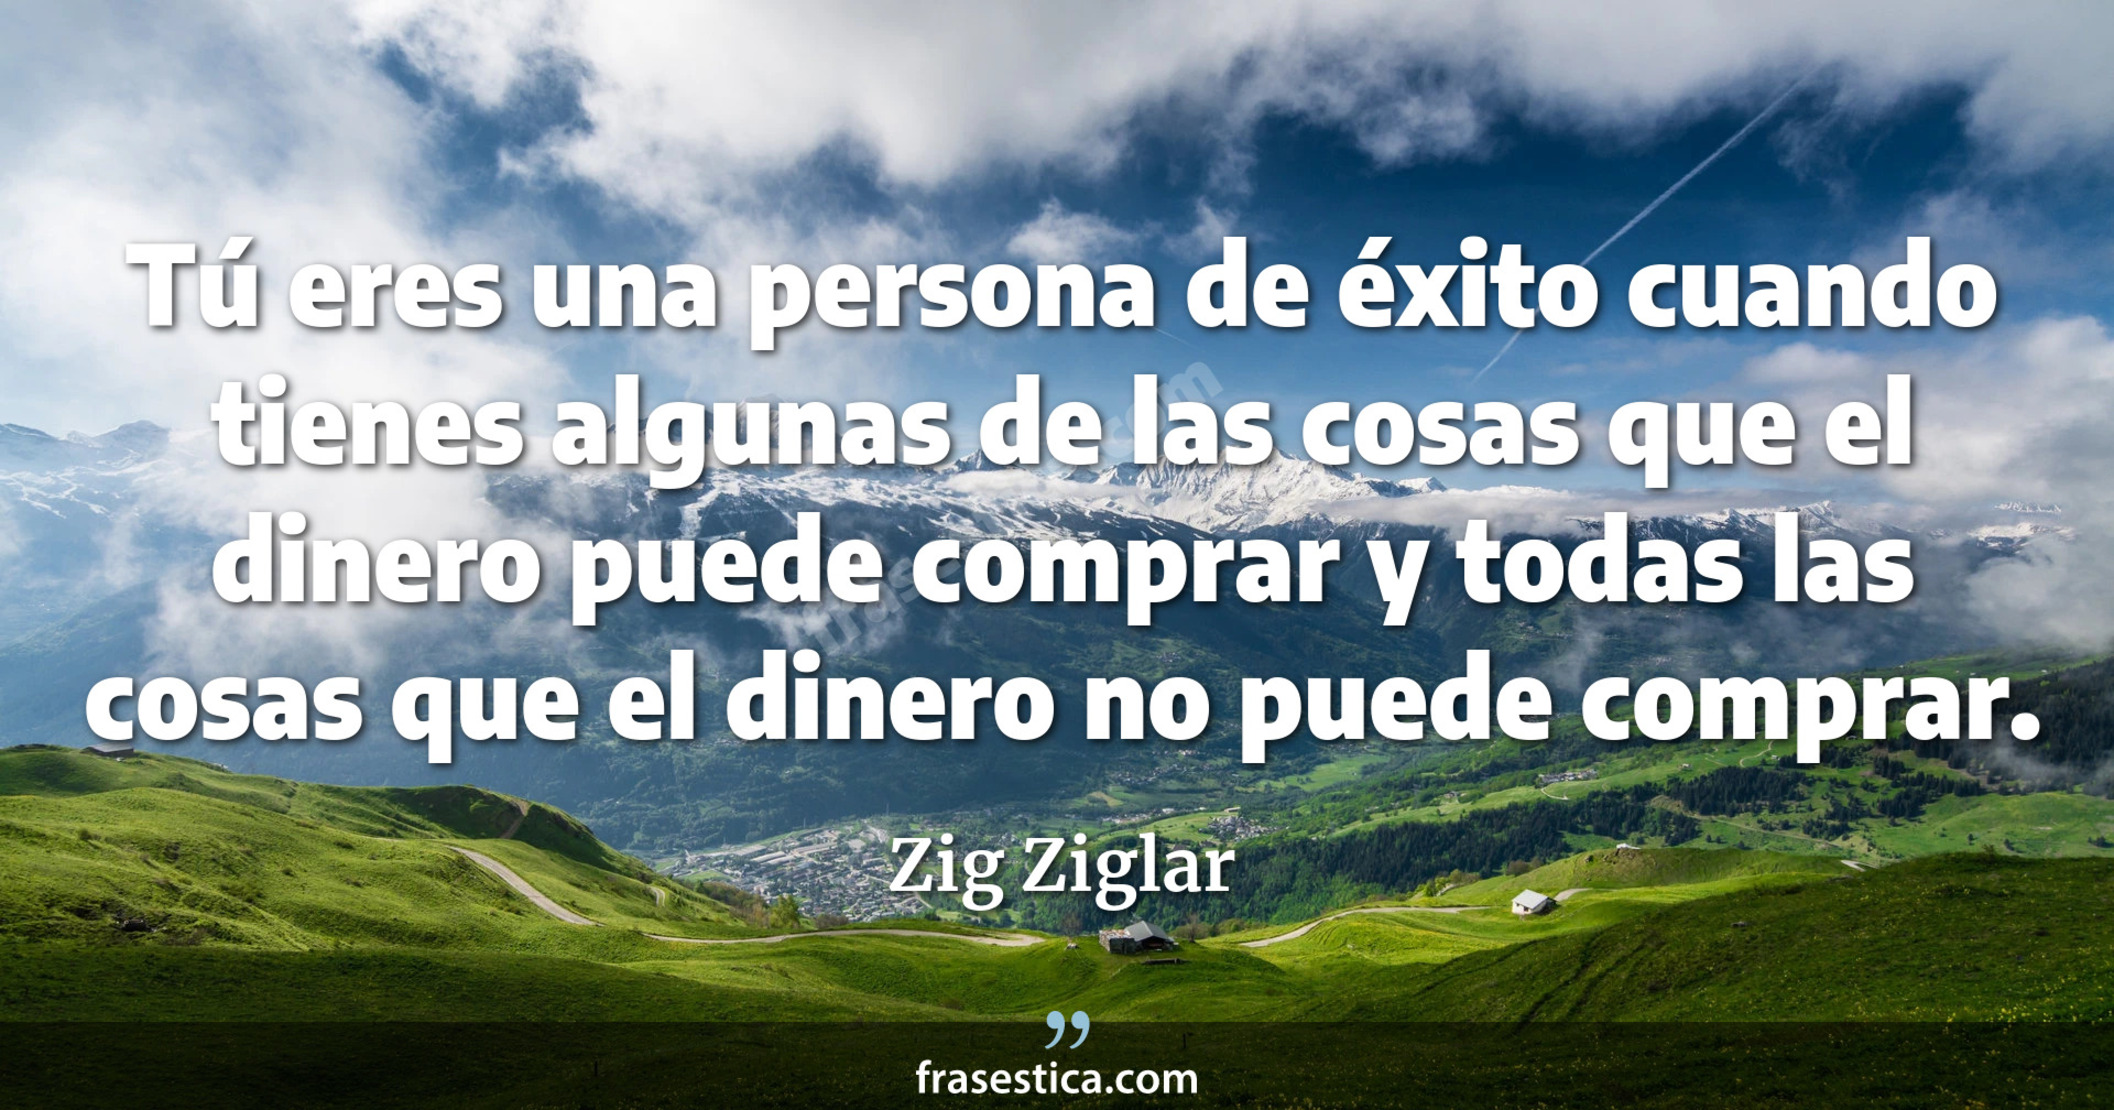 Tú eres una persona de éxito cuando tienes algunas de las cosas que el dinero puede comprar y todas las cosas que el dinero no puede comprar. - Zig Ziglar